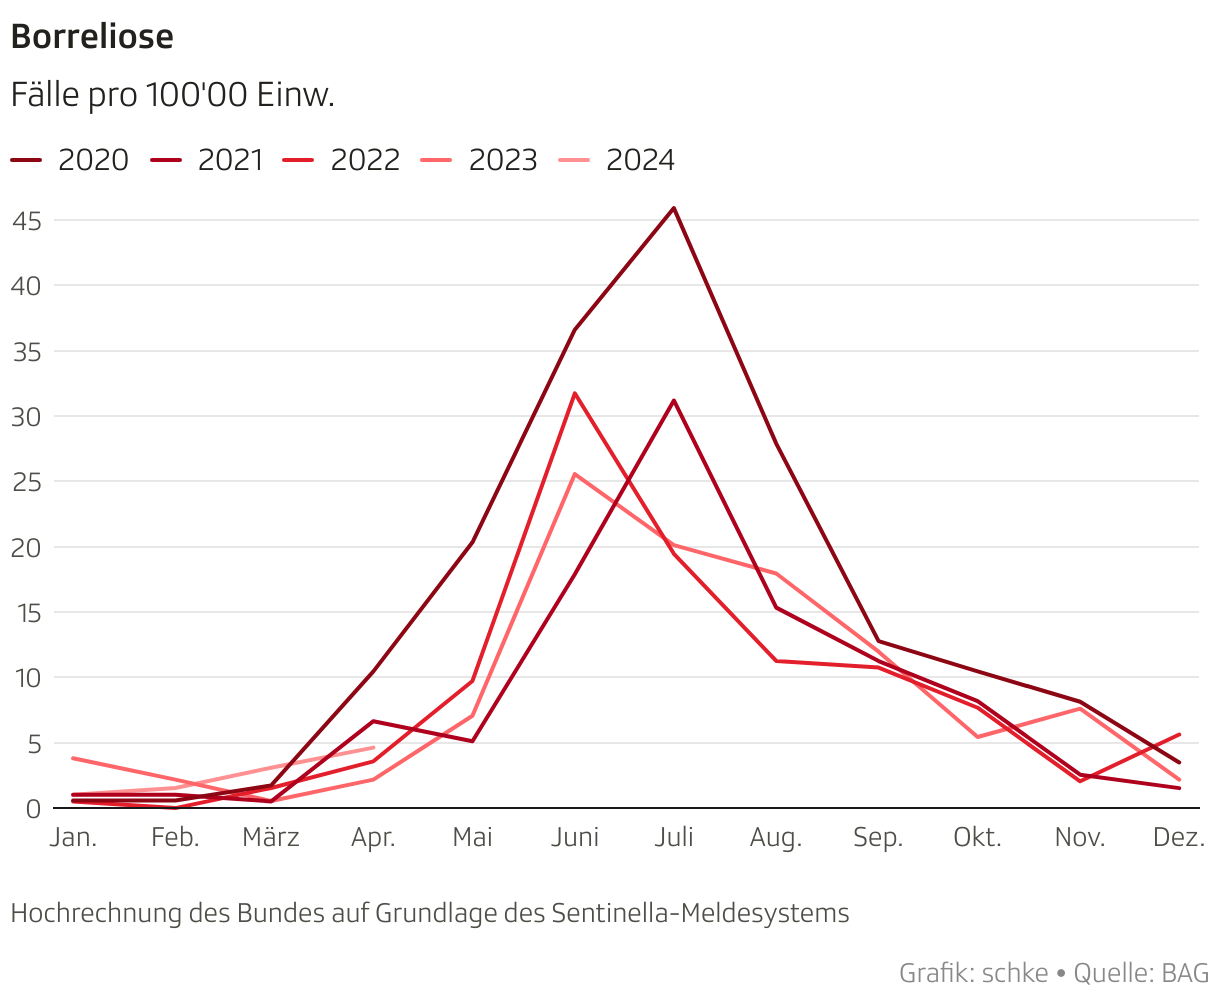 Monatliche Borreliose-Fallzahlen pro 100'000 Einwohnerinnen und Einwohner für die Schweiz. Die Zahlen basieren auf dem Sentinella-Meldesystem. 